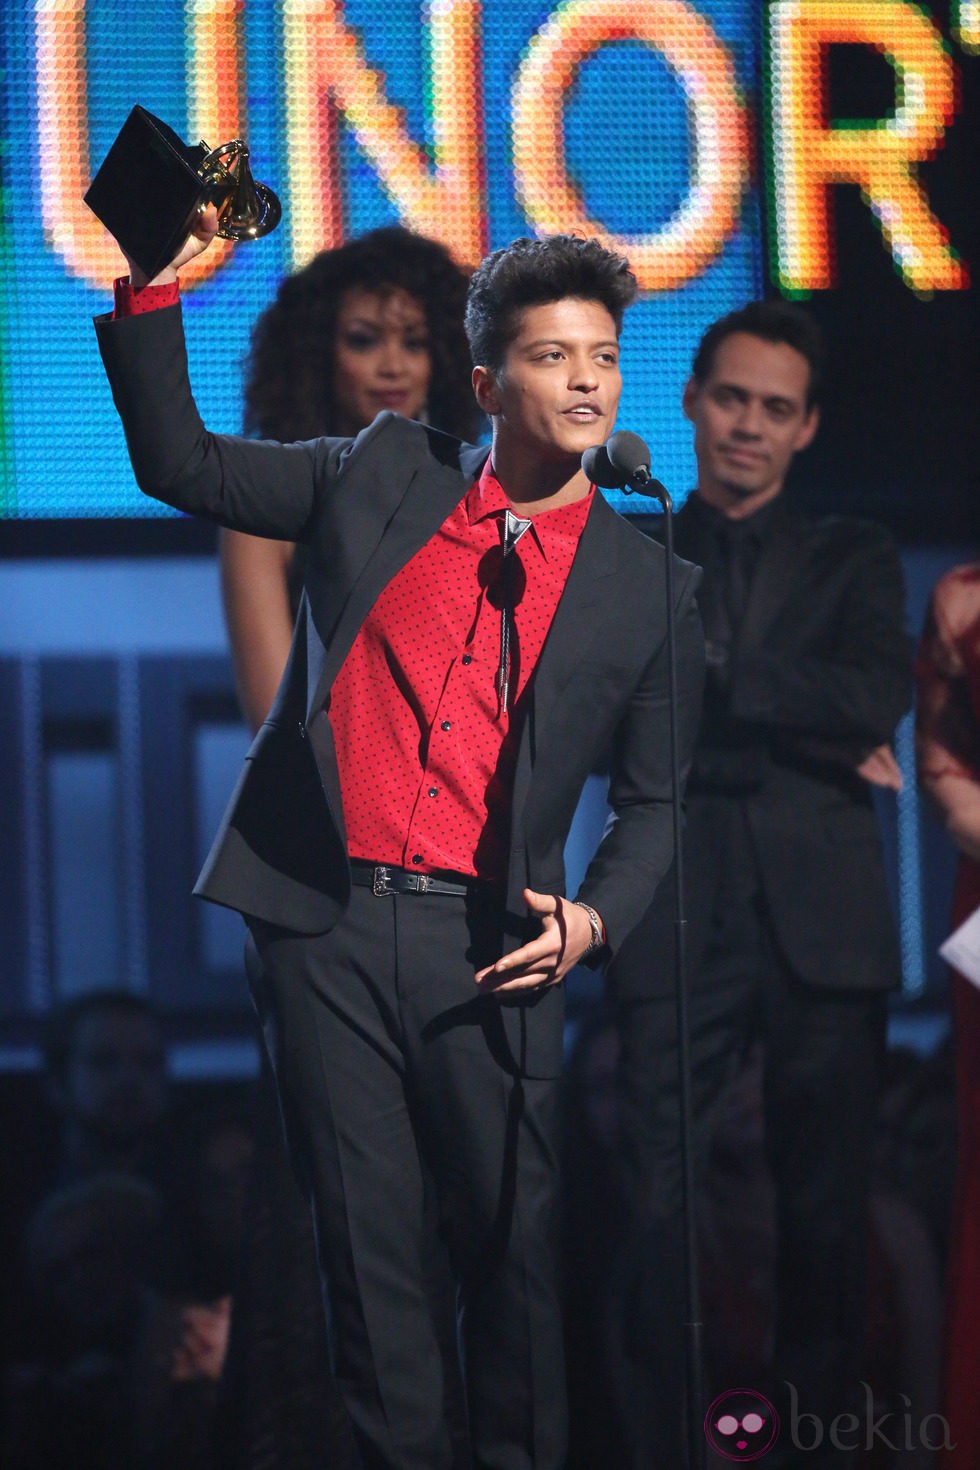 Bruno Mars recogiendo su premio en los Grammy 2014